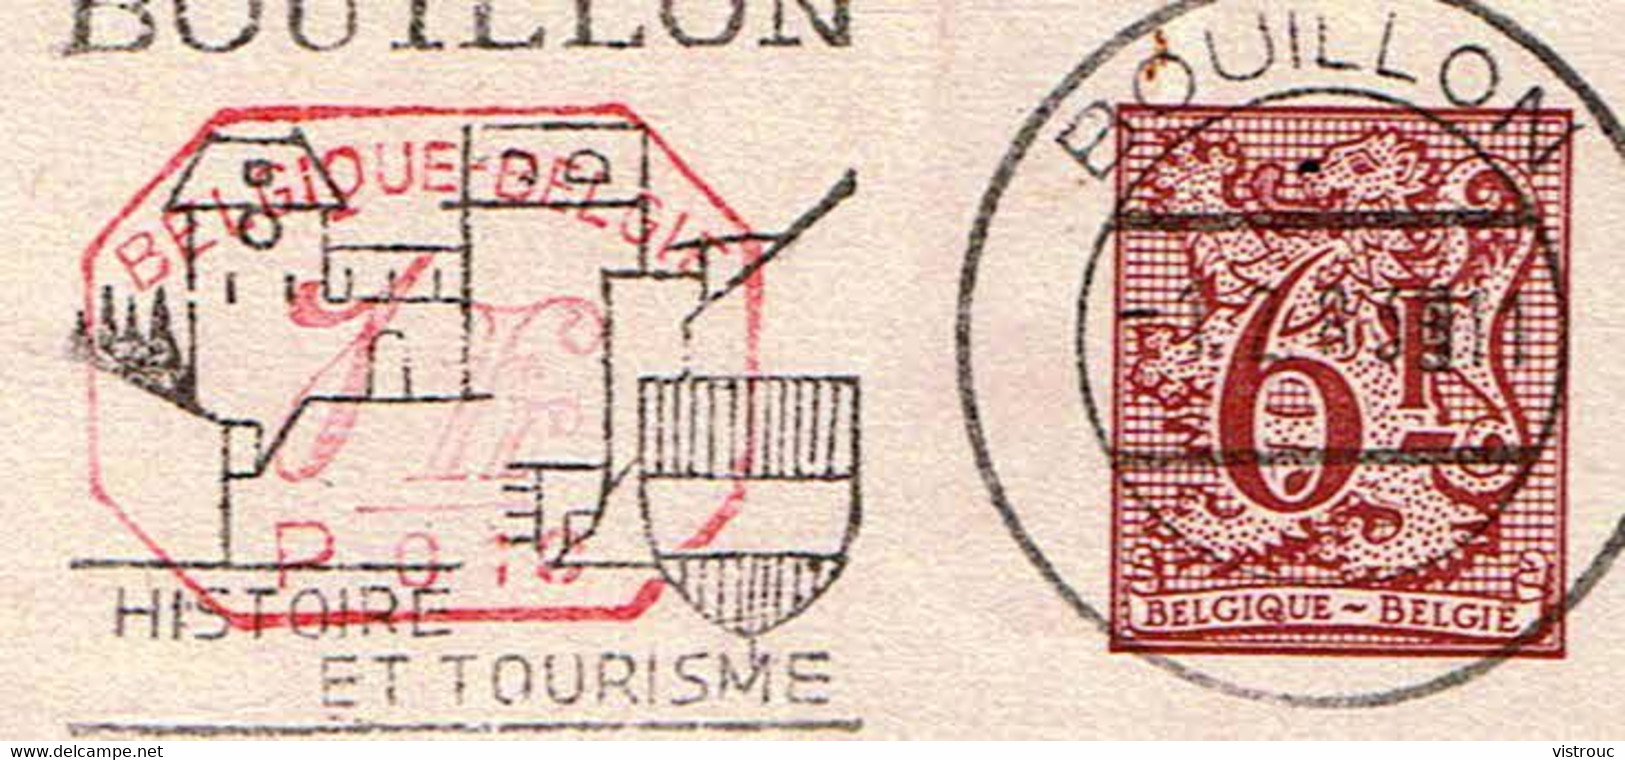 Changement D'adresse N° 23 III F M1 P010M (texte Français) - Circulé - Circulated - Gelaufen - 1983. - Avis Changement Adresse